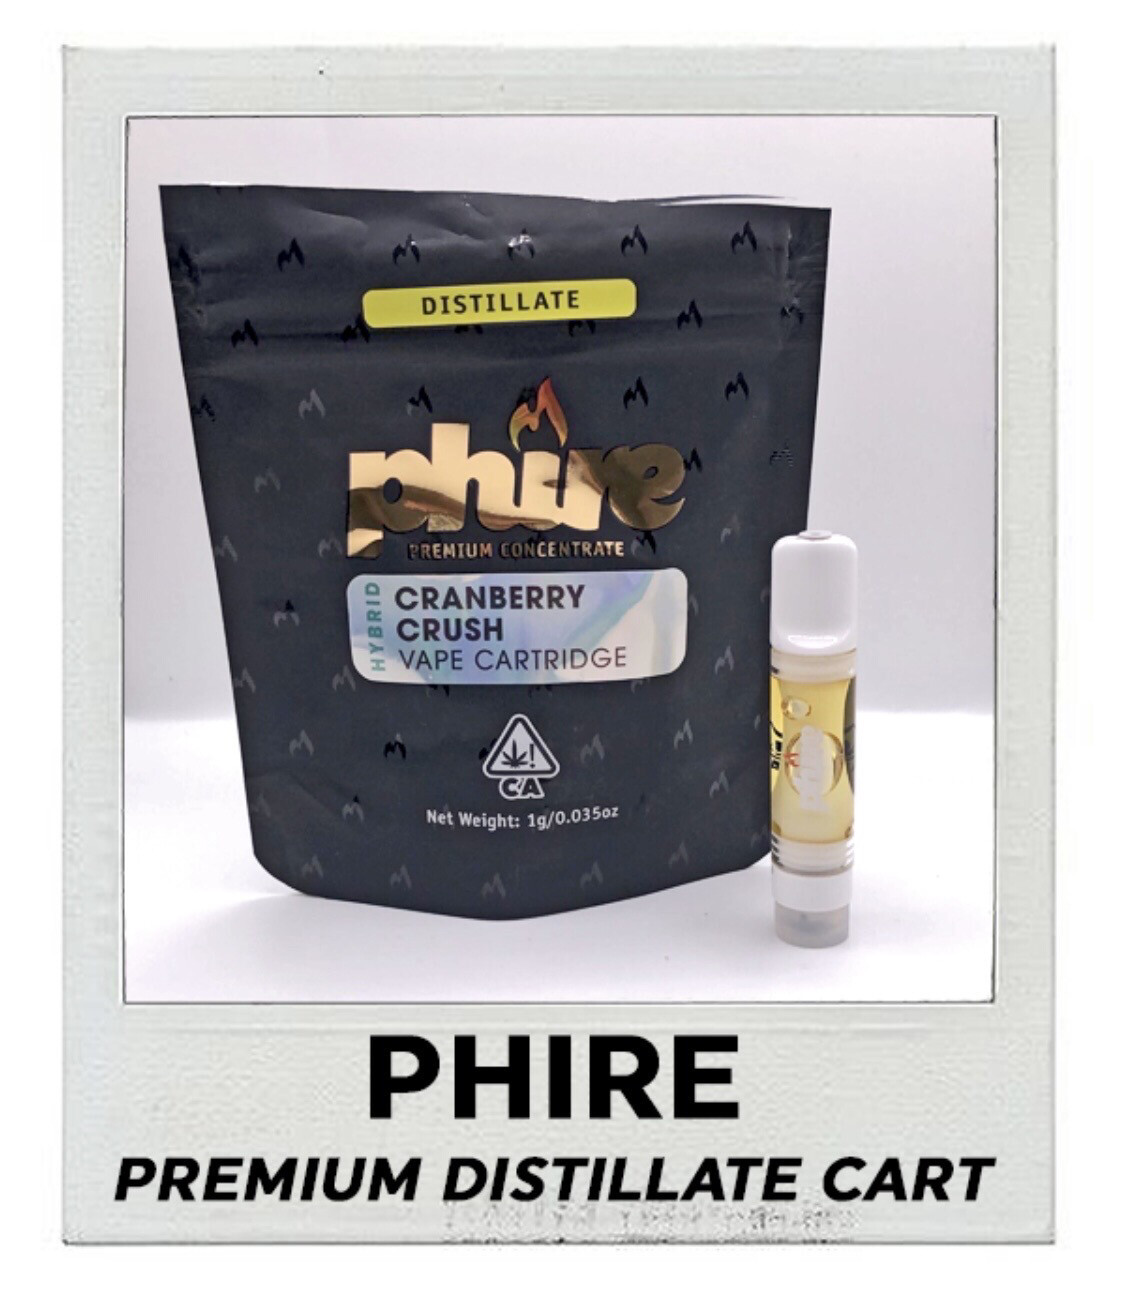 Phire premium distillate cart